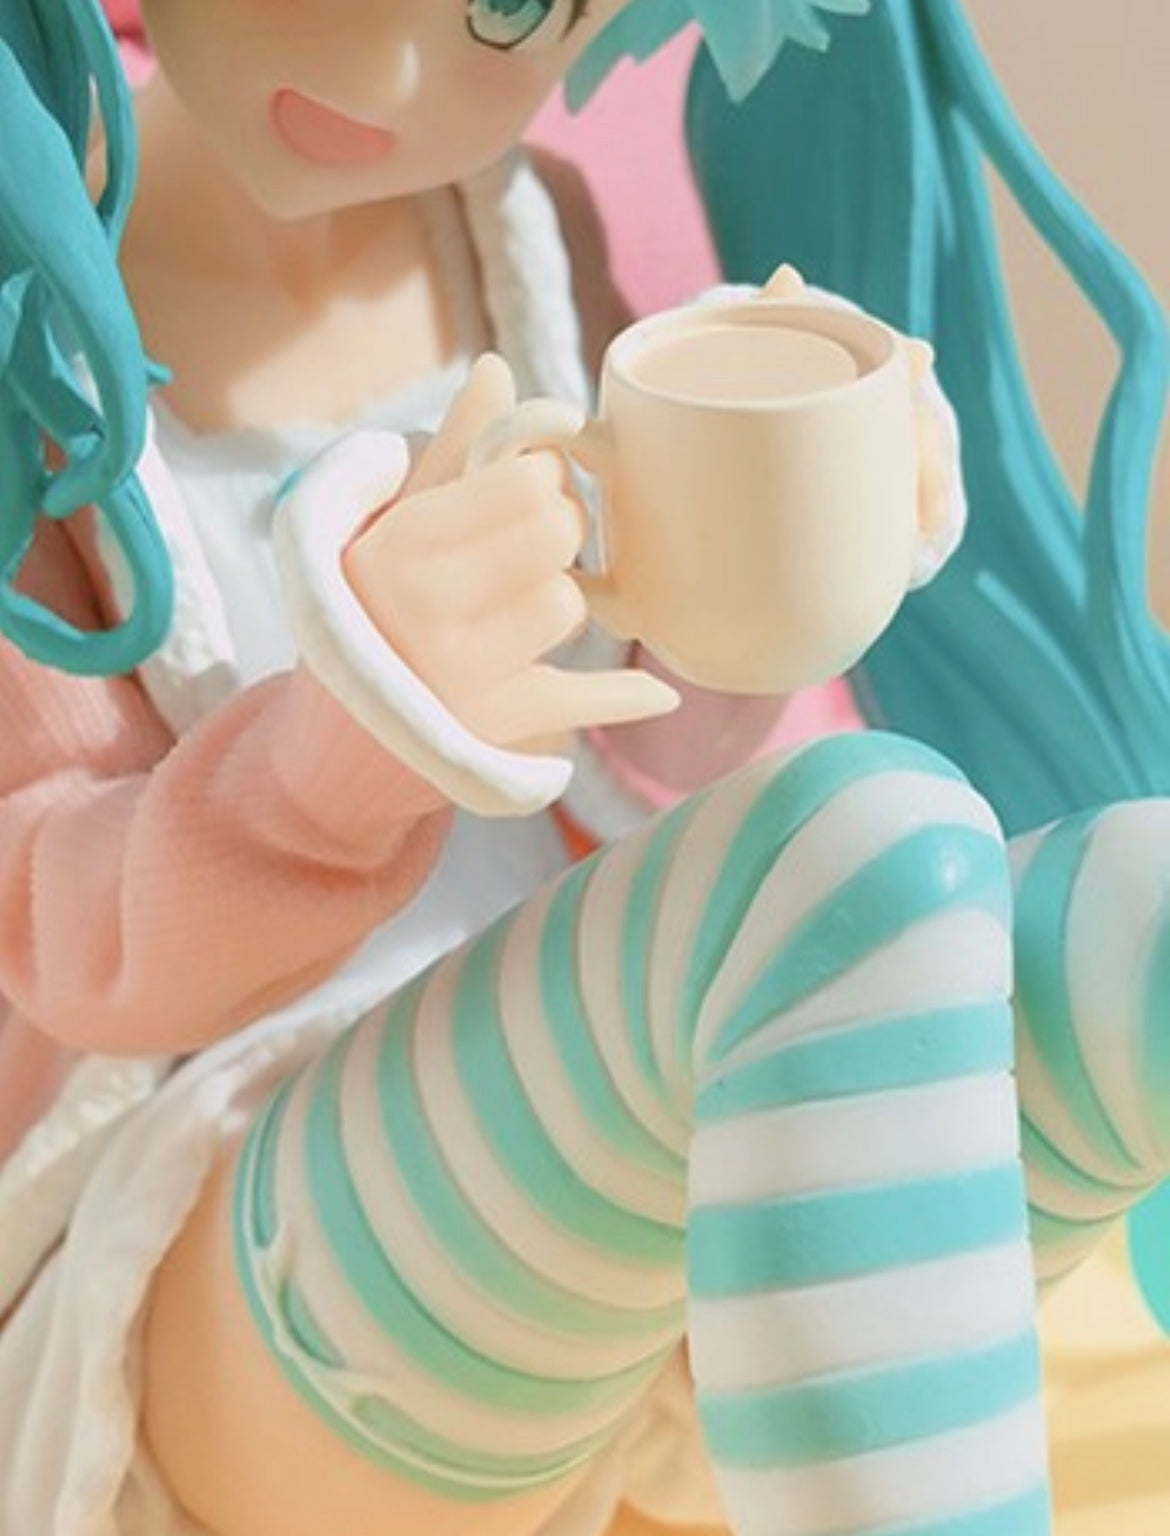 Vocaloid: Hatsune Miku Pajamas Figure by Taito